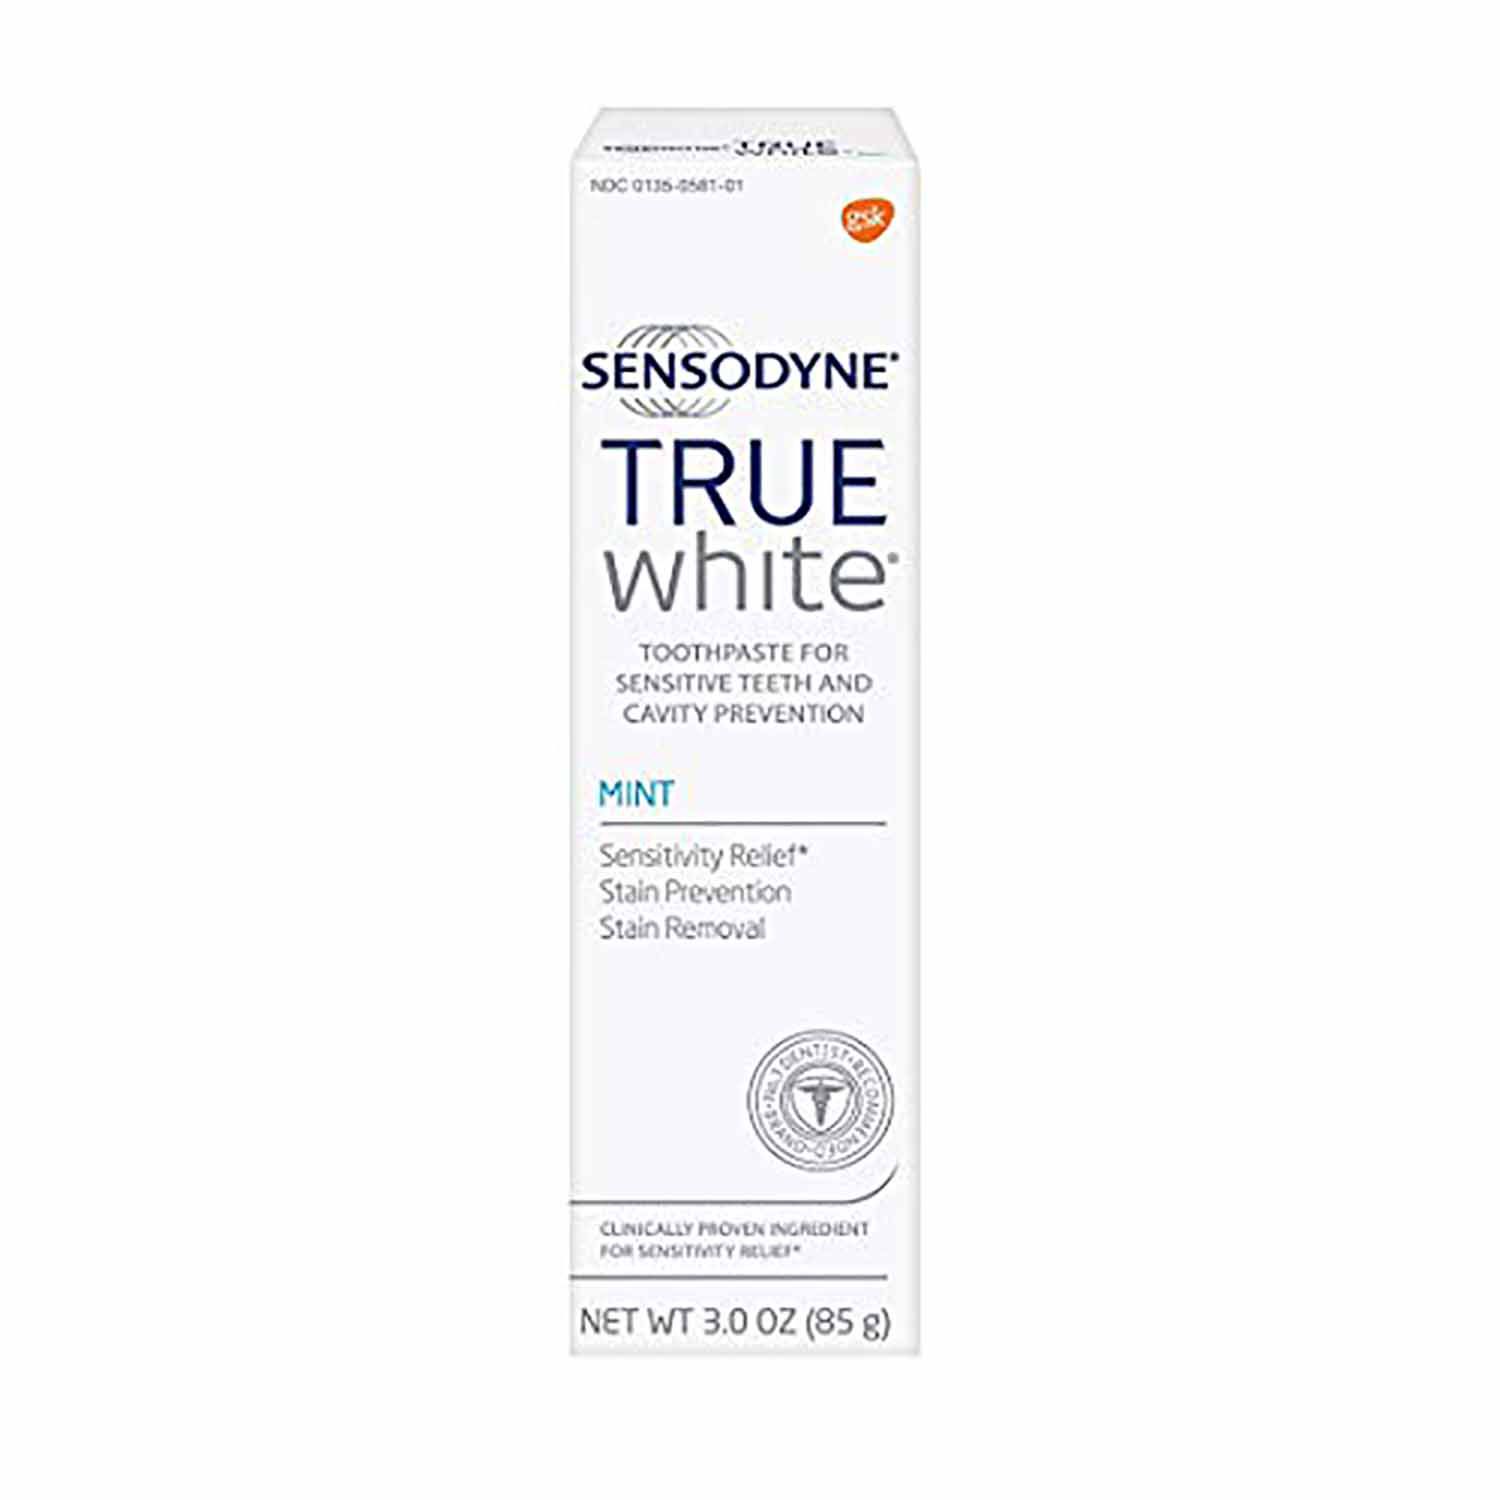 whitening toothpaste sensodyne